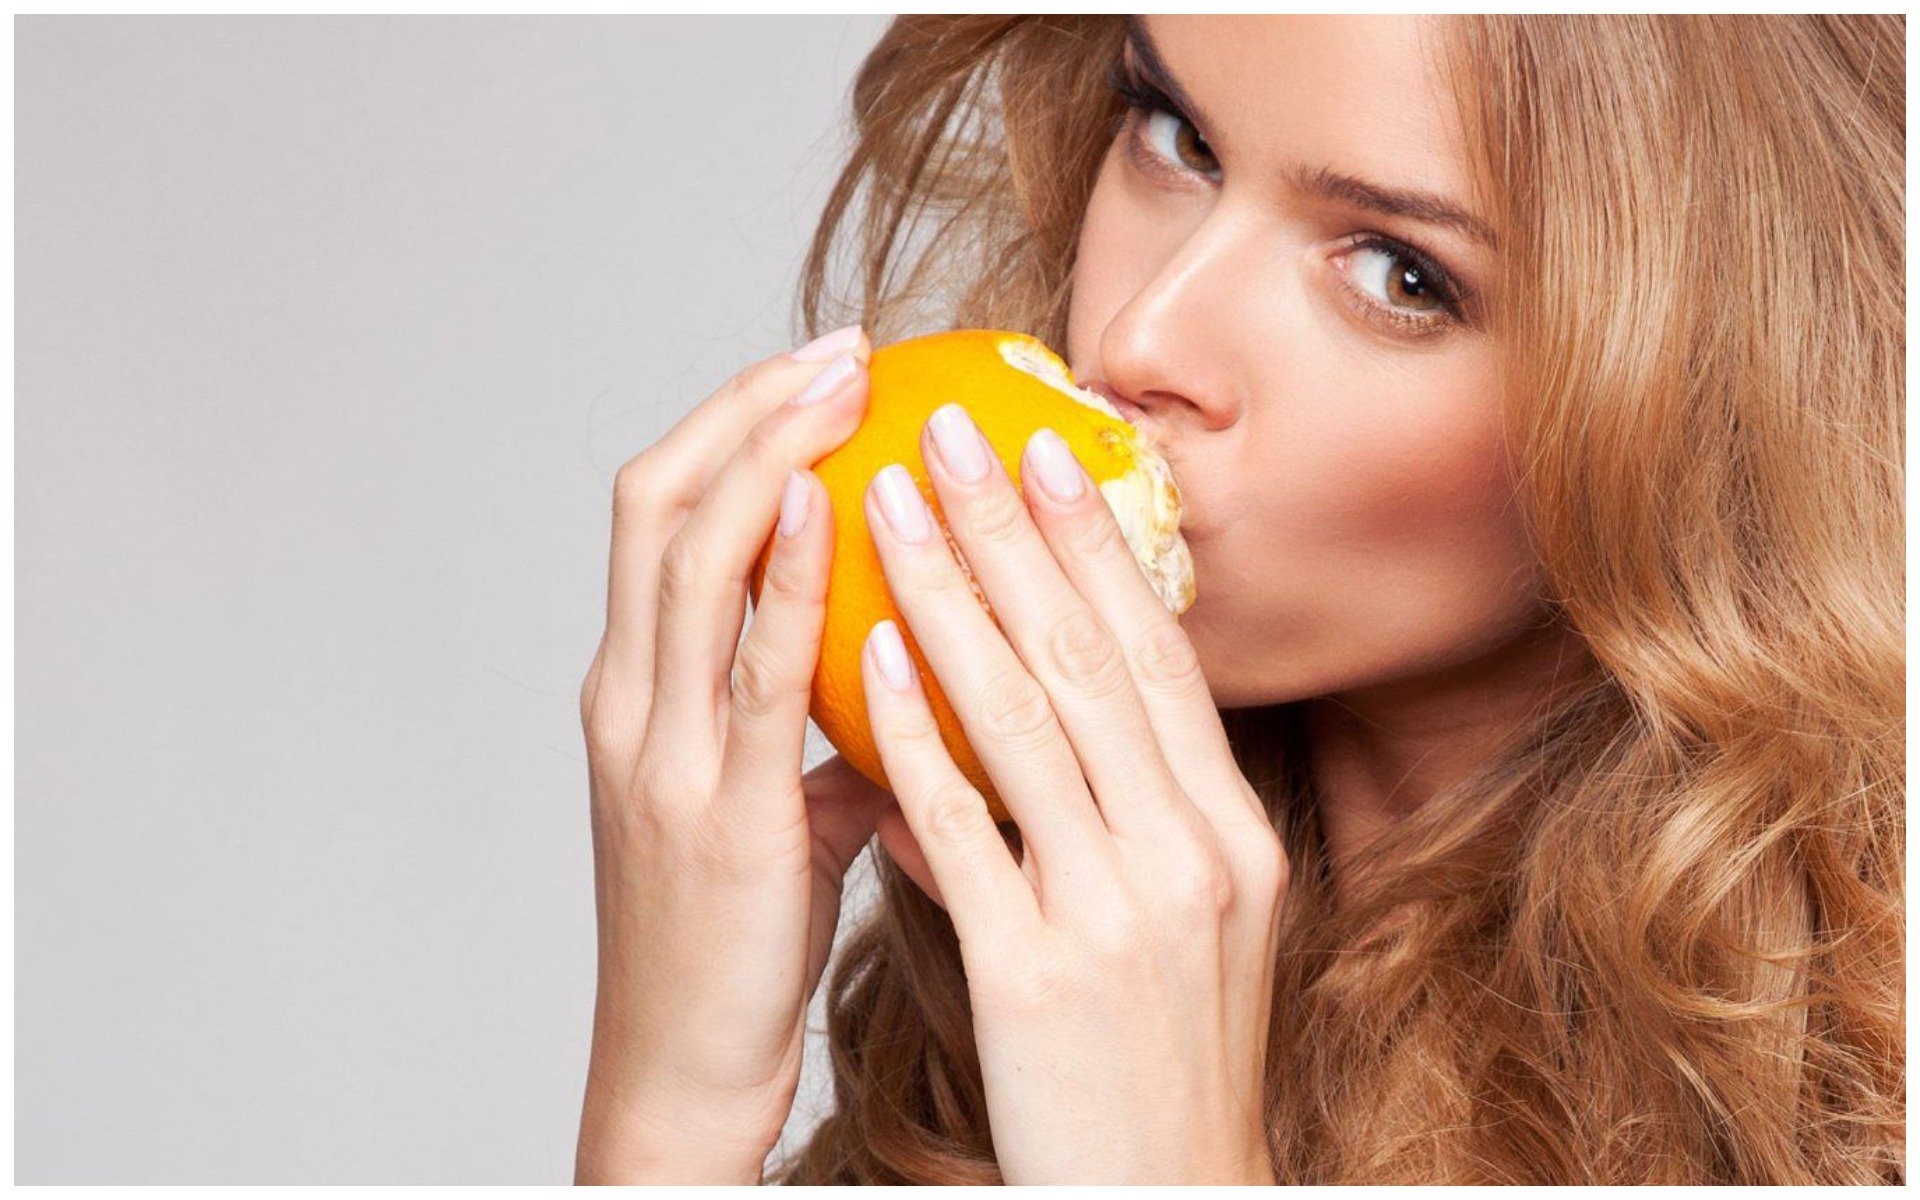 Мандарин на ночь при похудении можно ли. Девушка с апельсинами. Фотосессия с апельсинами. Девушка с мандаринами. Девушка ест мандарин.